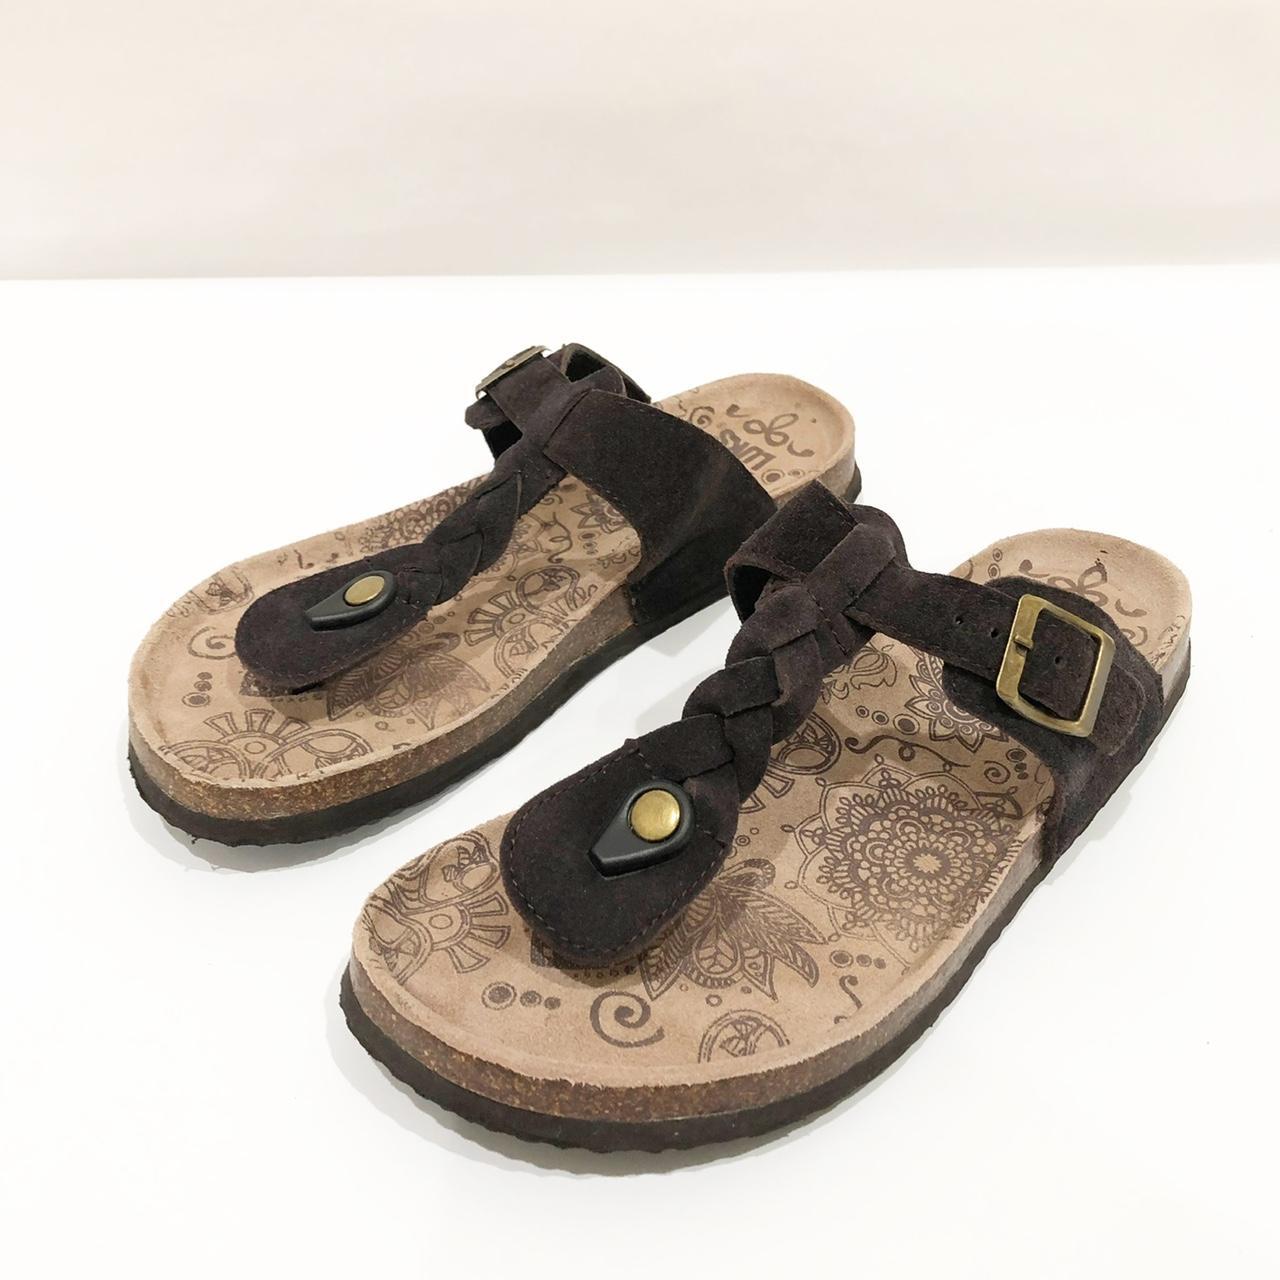 Muk Luks Women's Tan and Brown Sandals (2)